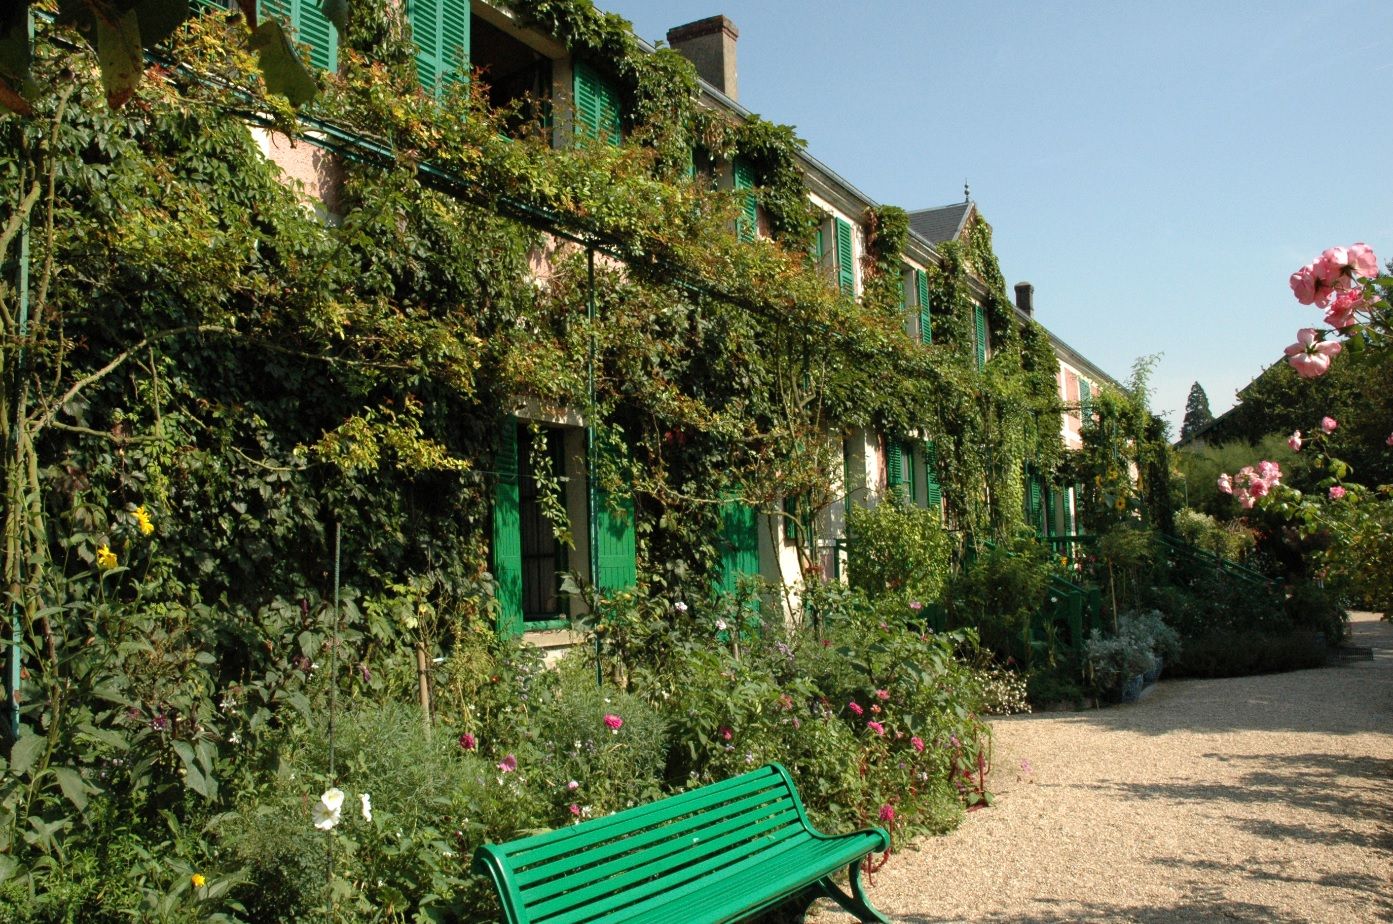 Maison de Claude Monet, Giverny, Normandie - France